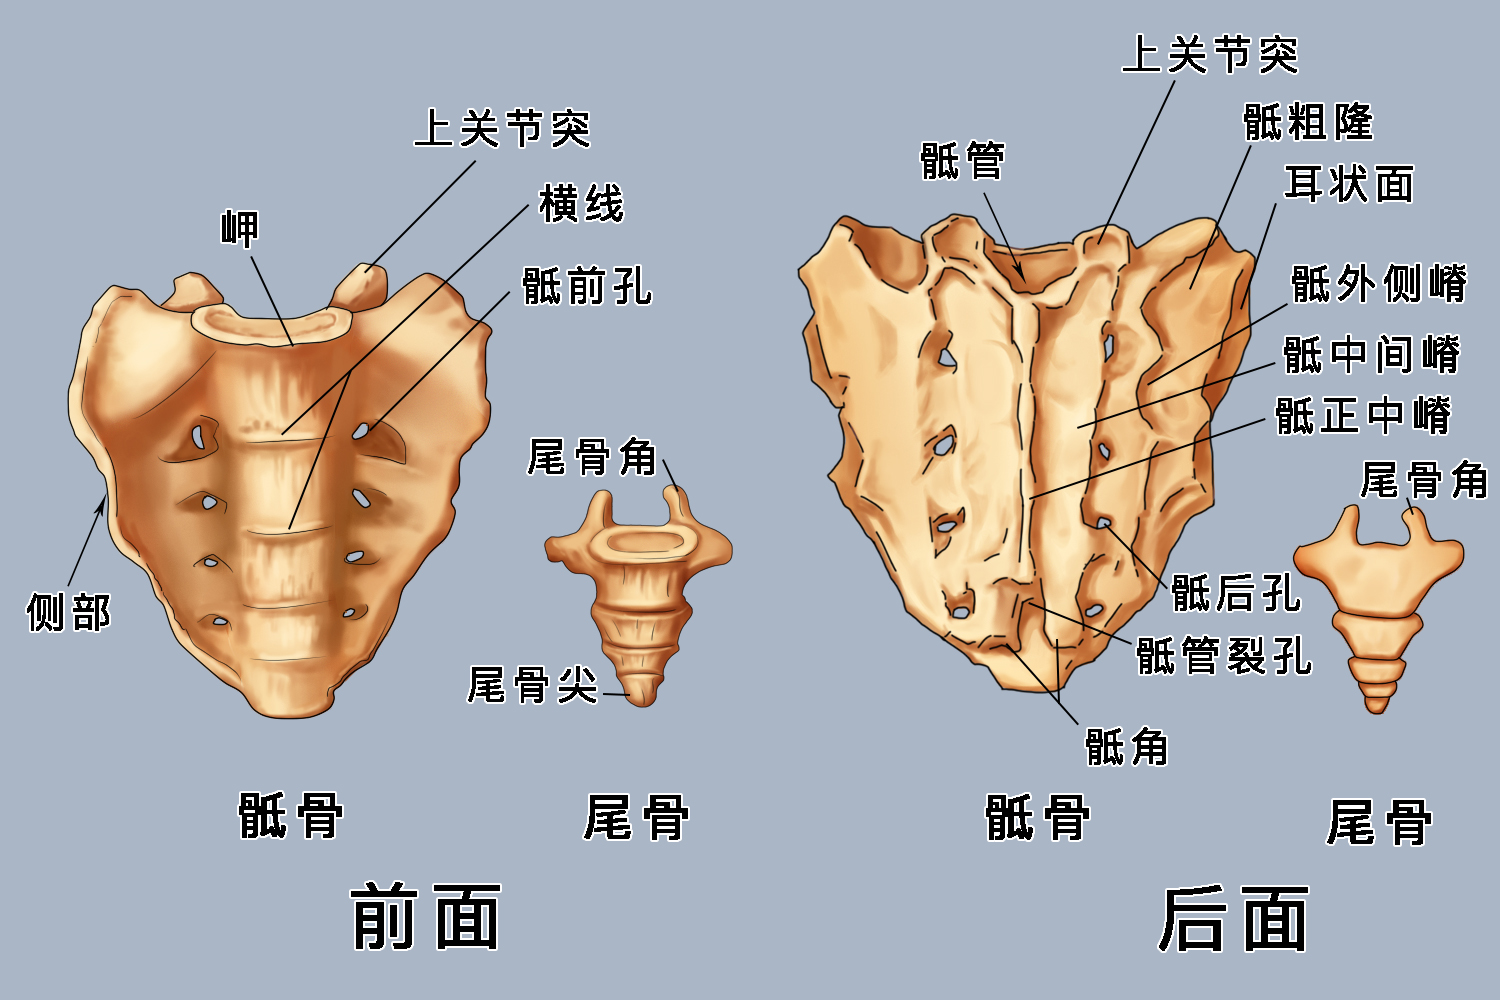 骶尾骨位置示意图图片